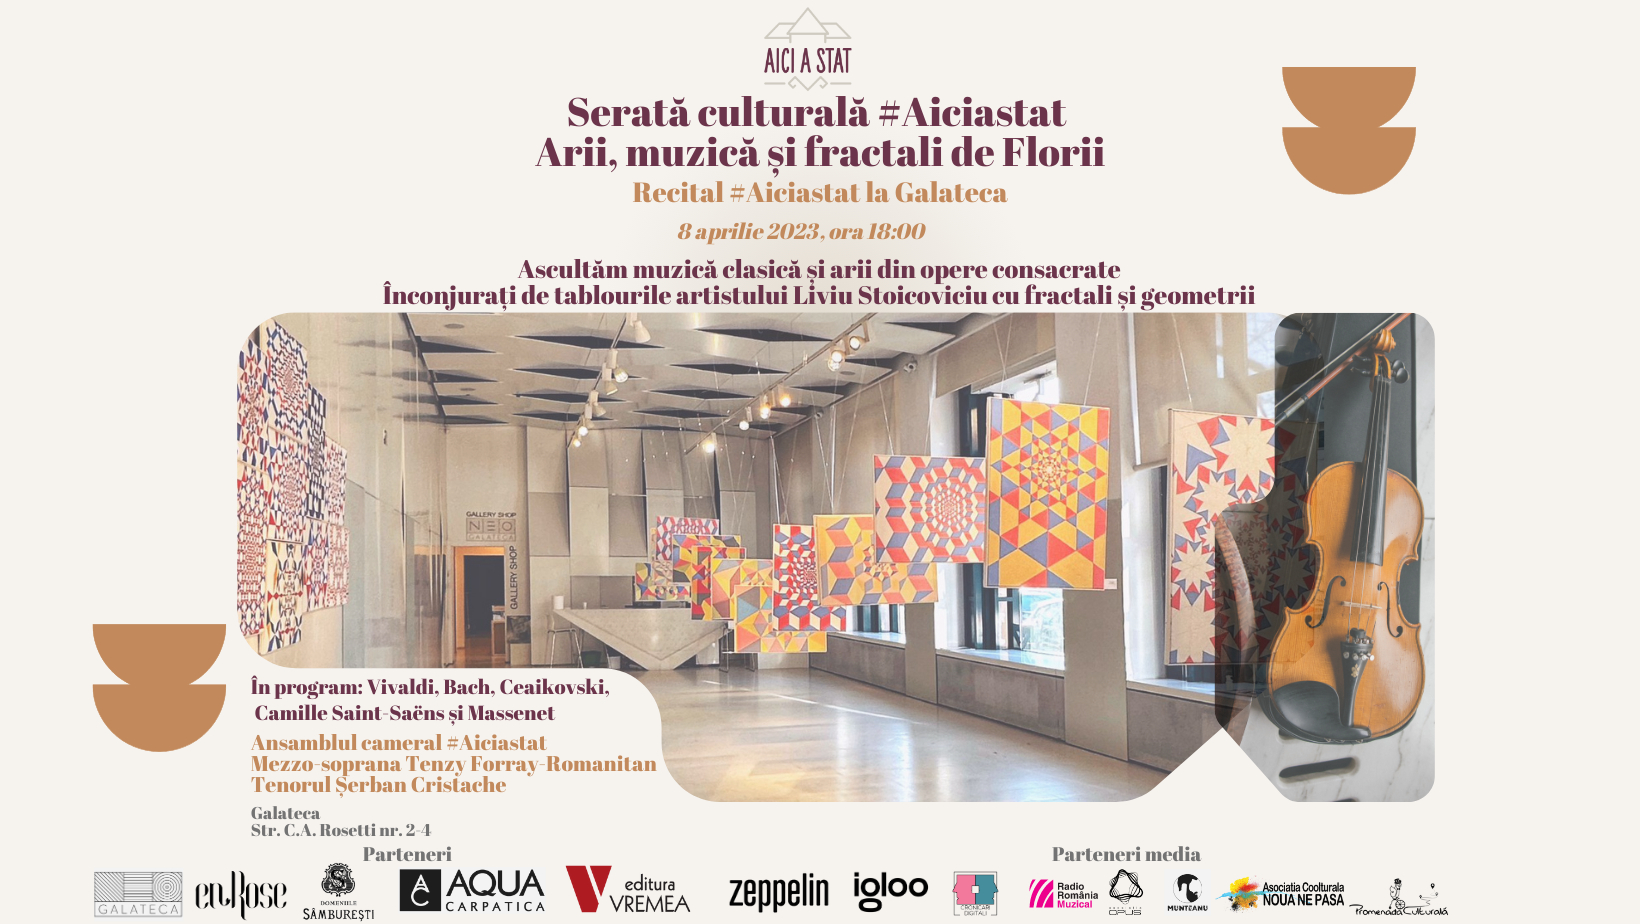 Serata culturală #Aiciastat: Arii, muzică și fractali de Florii – 8 aprilie 2023